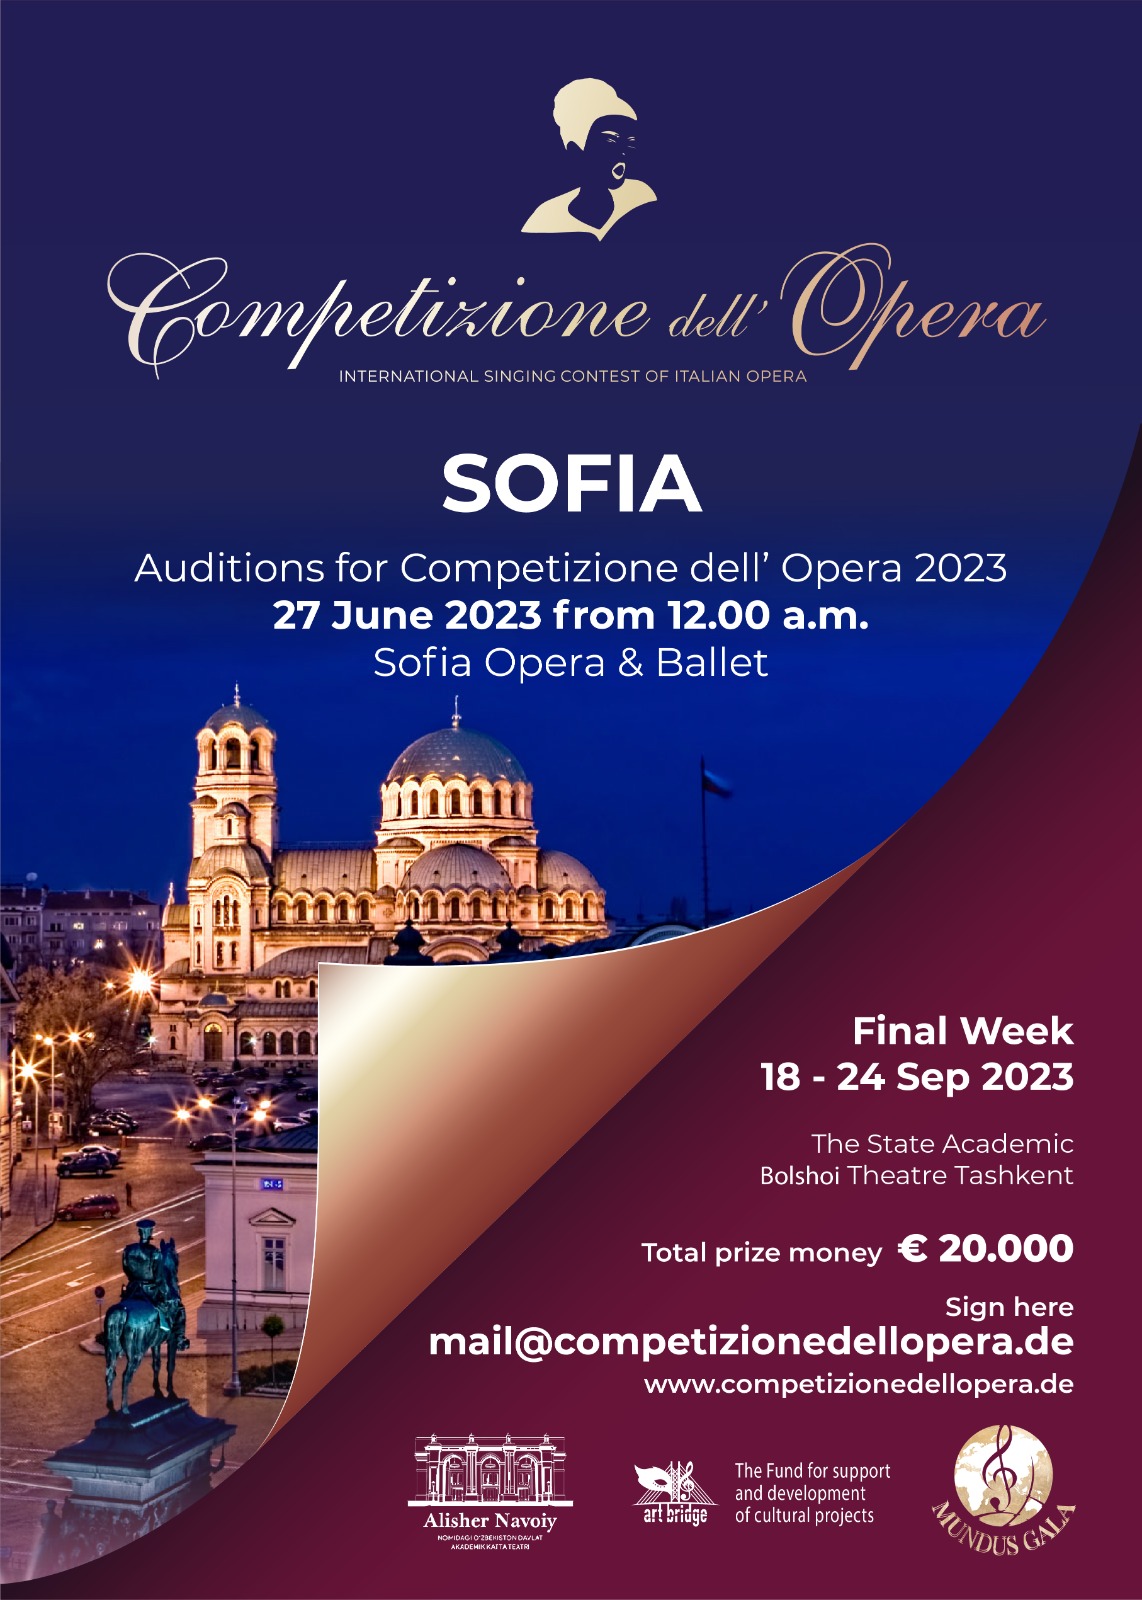 The Competizione dell‘ Opera 2023